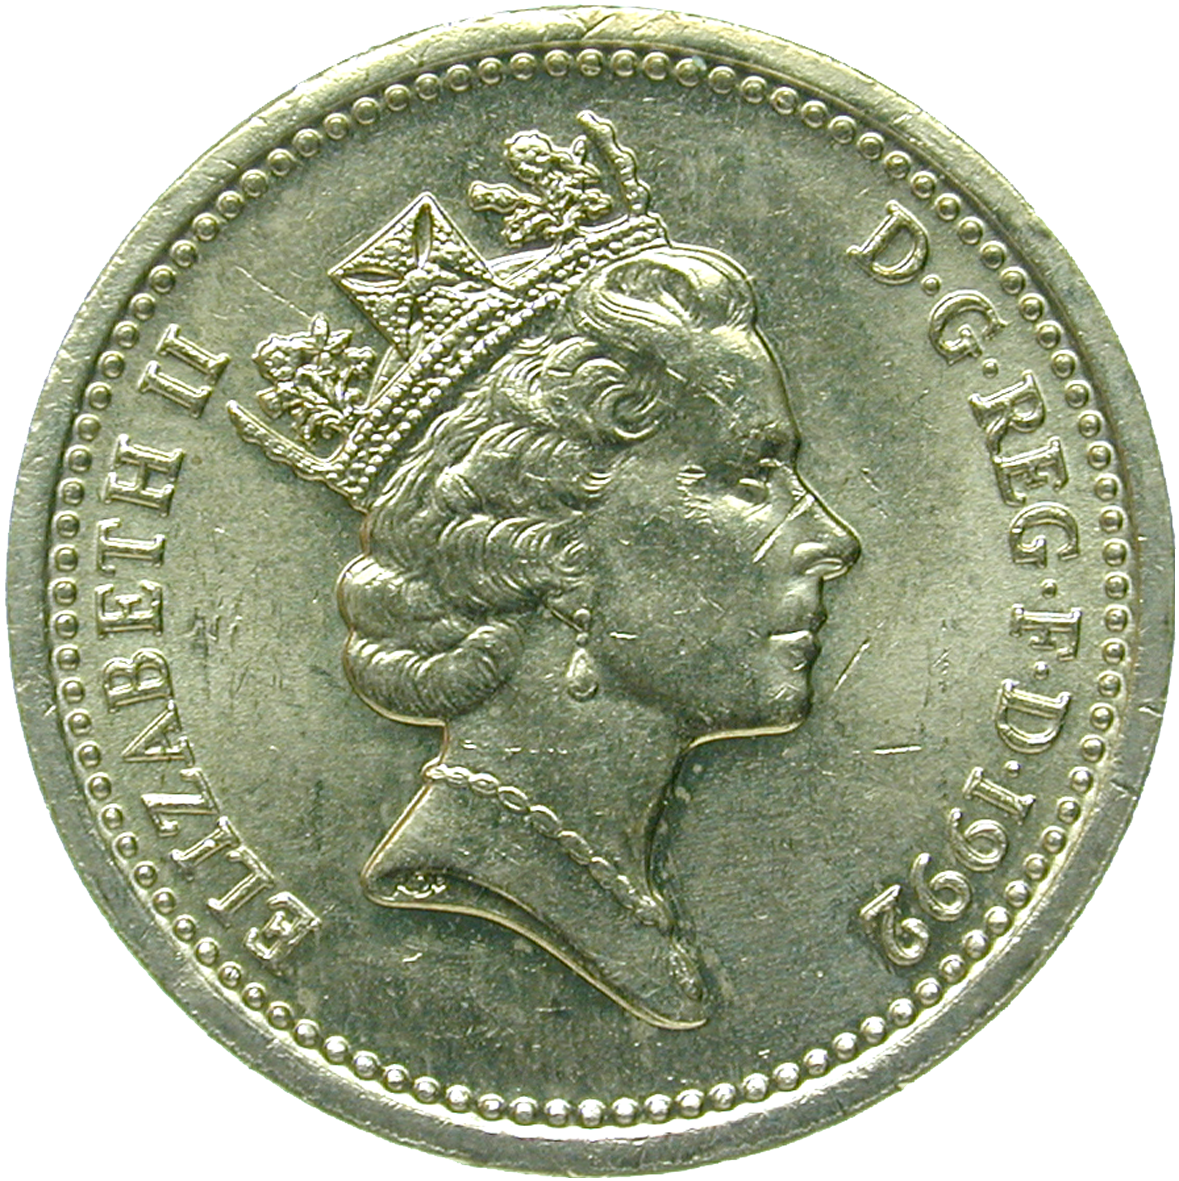 Vereinigtes Königreich Grossbritannien, Elisabeth II., 1 Pfund 1992 (obverse)